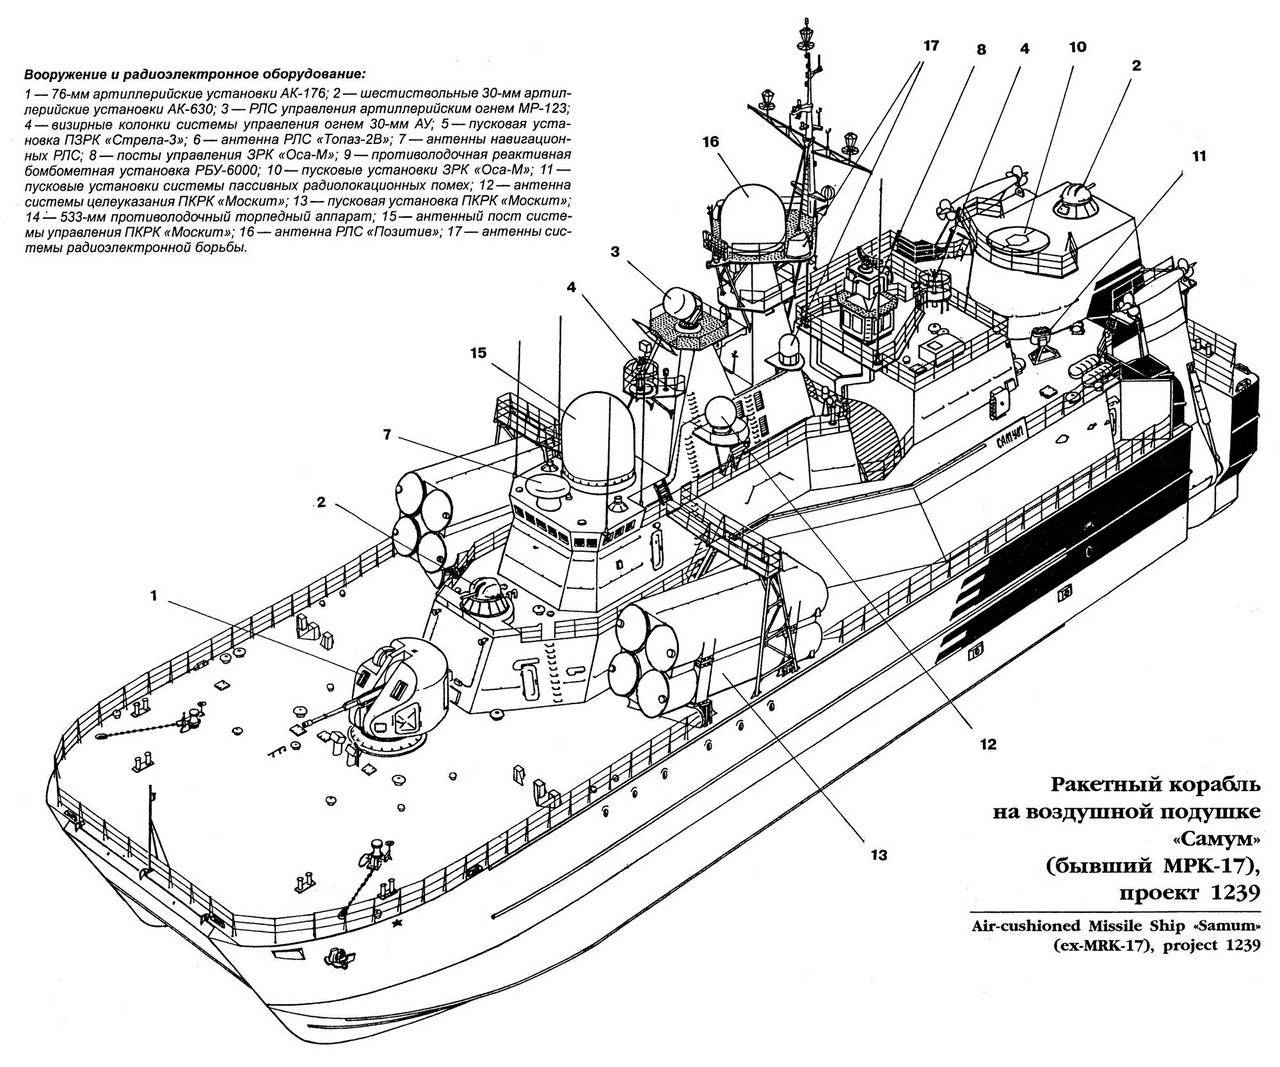 Российский корабль на воздушной подушке "бора" прибыл в стамбул